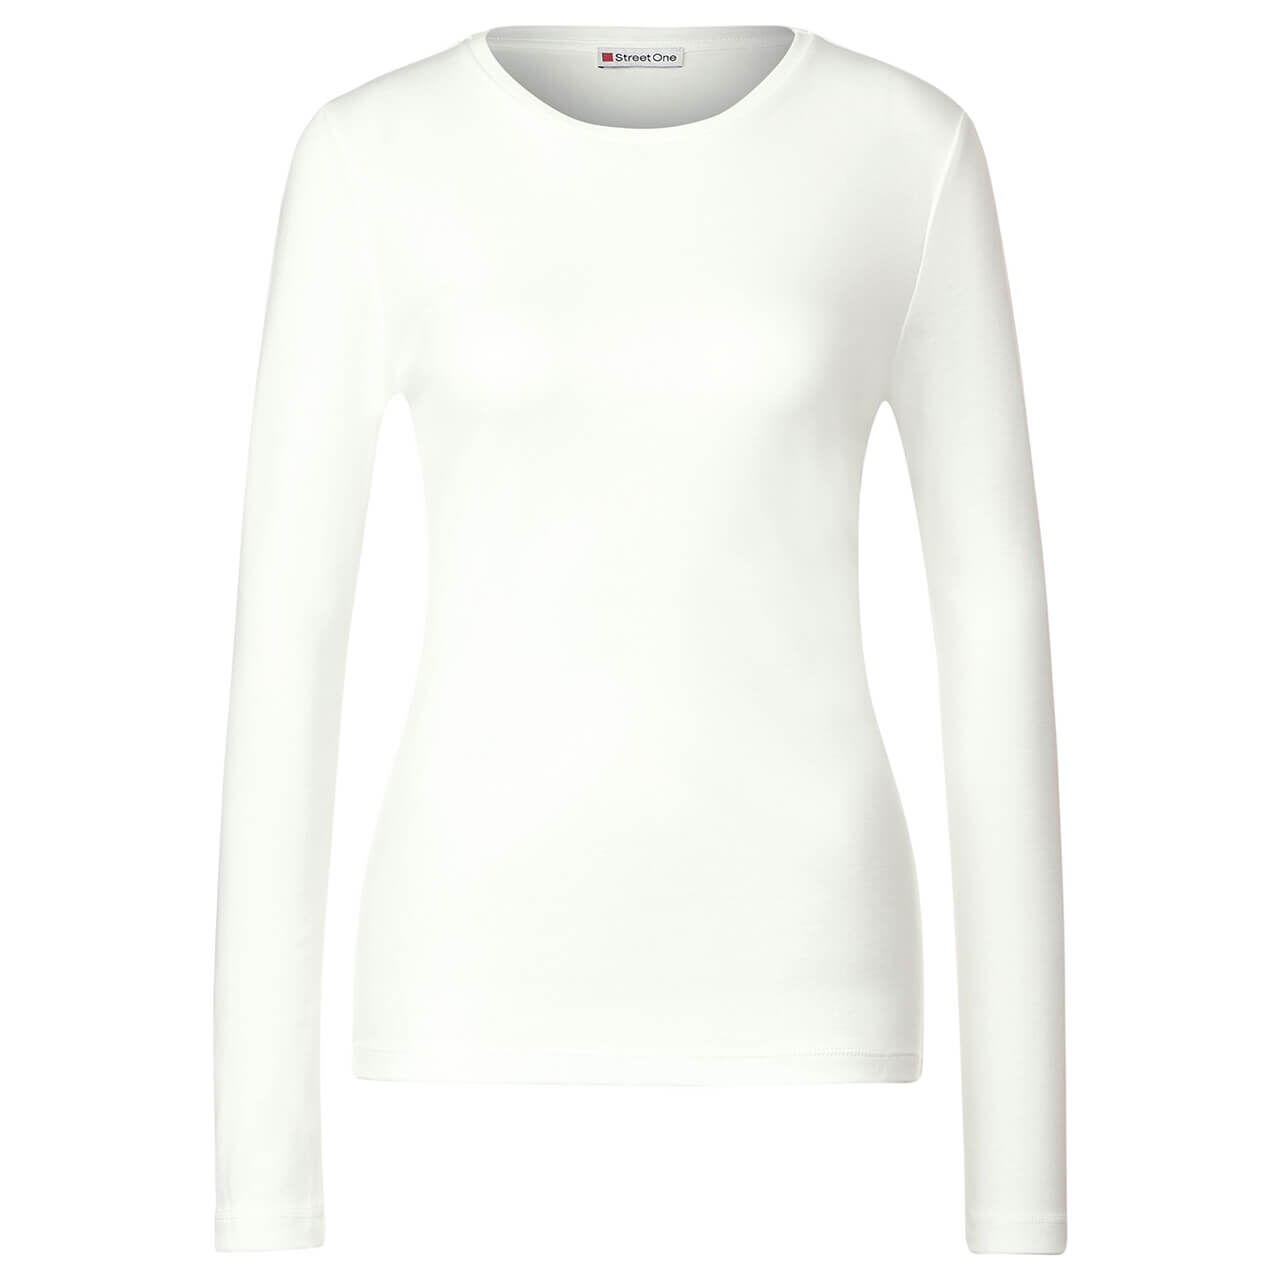 Street One Damen Langarm Shirt Basic white